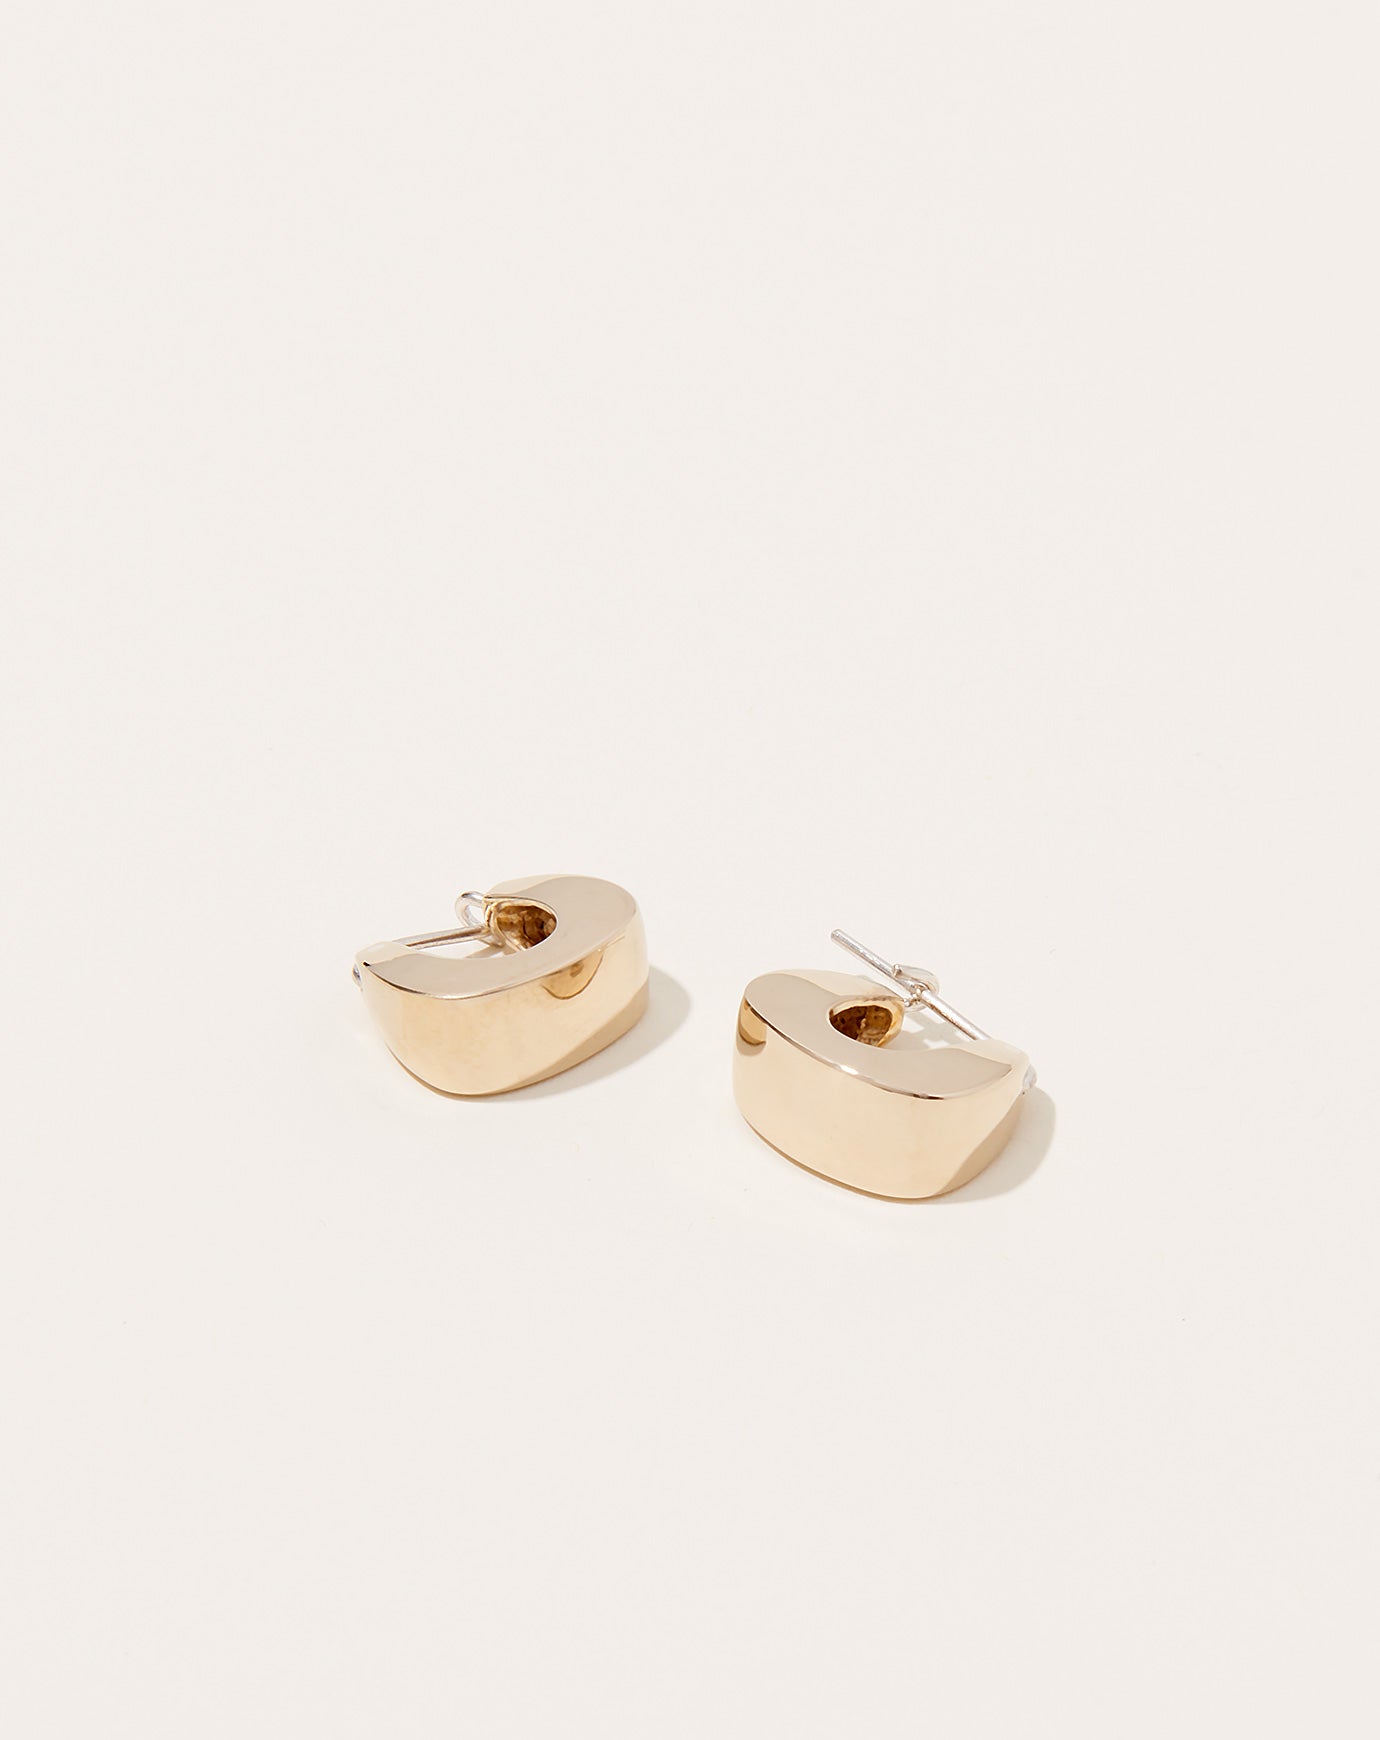 Quarry Proctor Earring in Brass